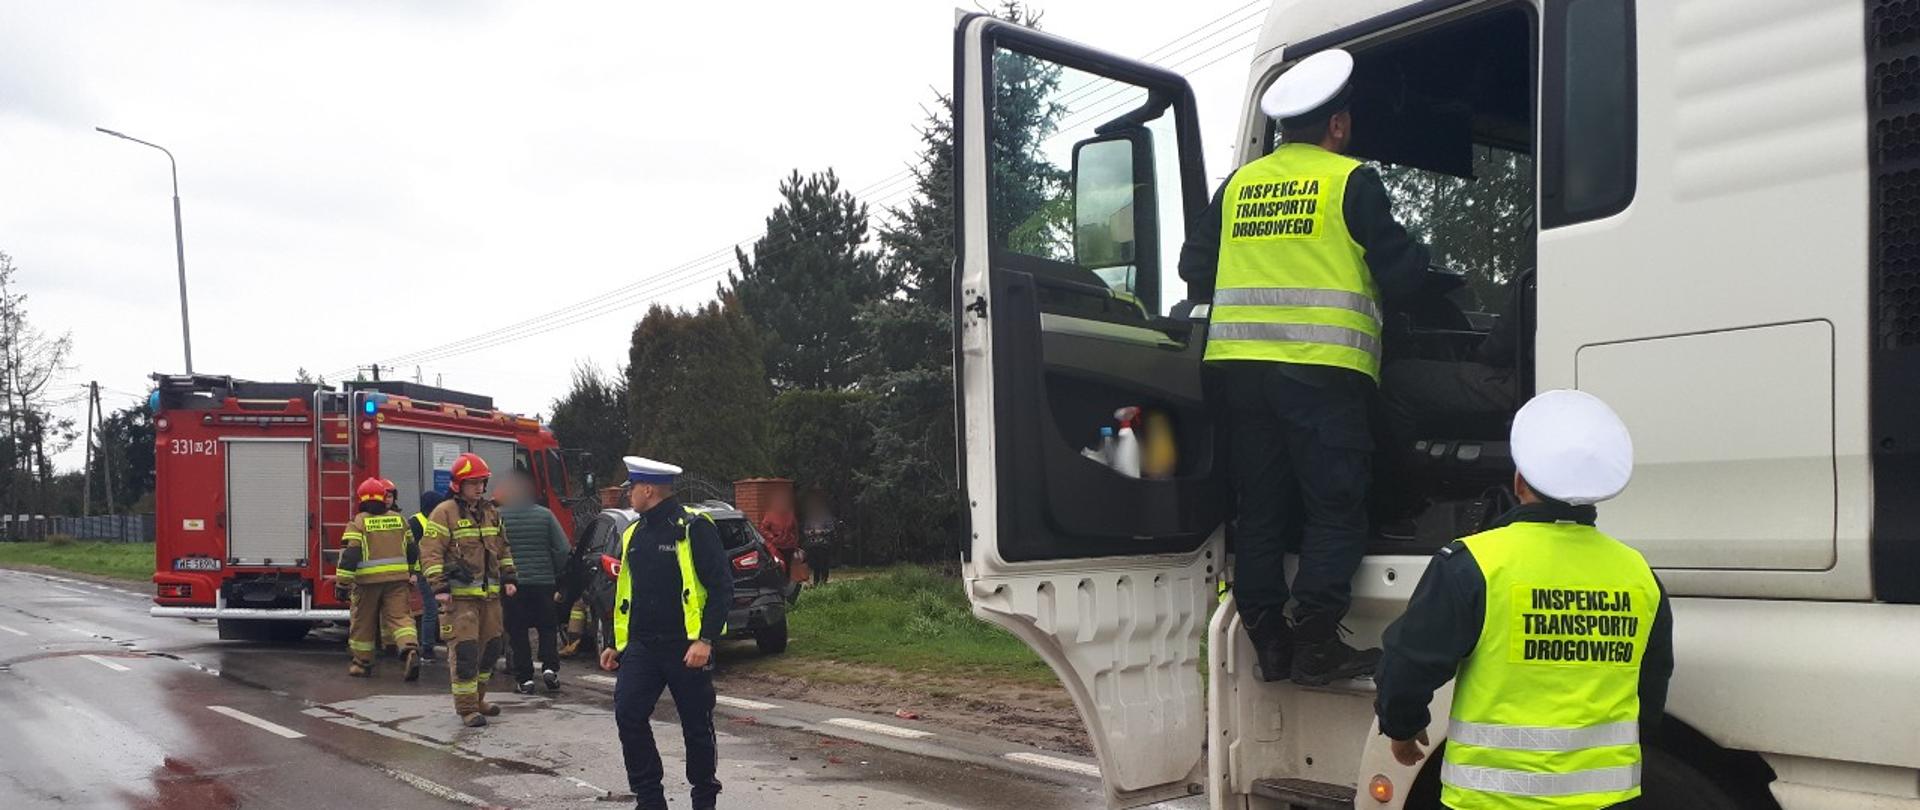 Inspektorzy mazowieckiej Inspekcji Transportu Drogowego pobierają dane z tachografu ciężarówki biorącej udział w wypadku drogowym na ul. Wolanowskiej w Radomiu.